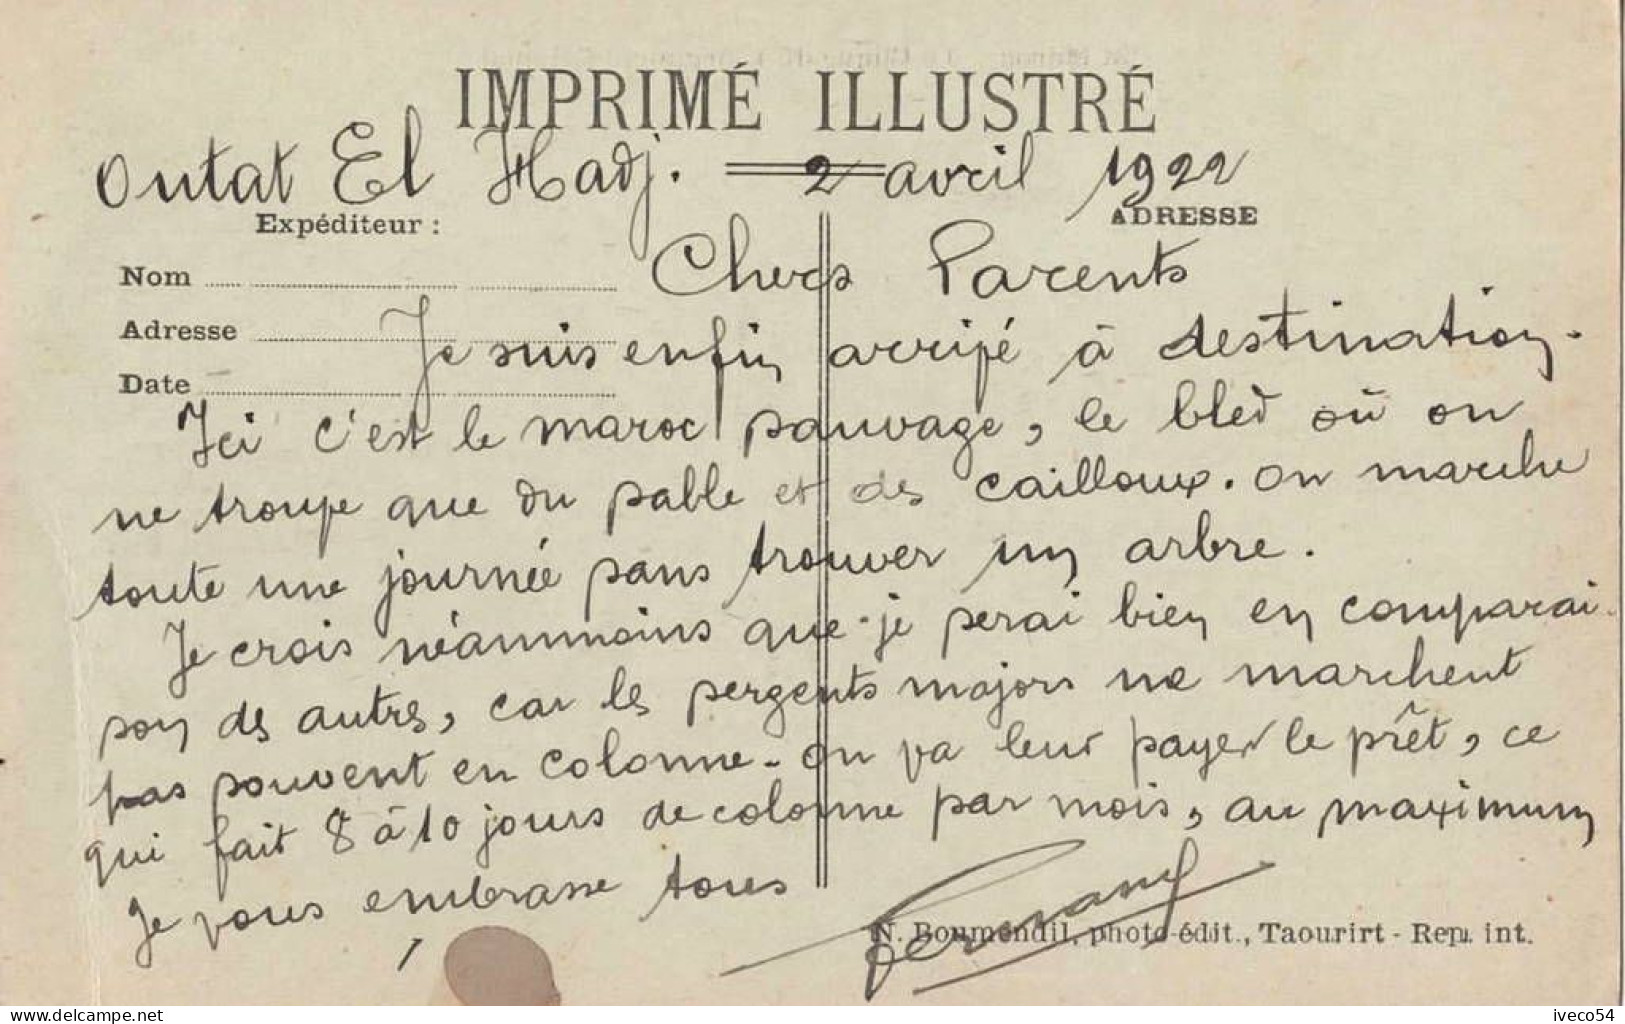 1922   Maroc  /  Outat El Hadj   "  La Clique Du 4ème Régiment Colonial   " - Autres & Non Classés